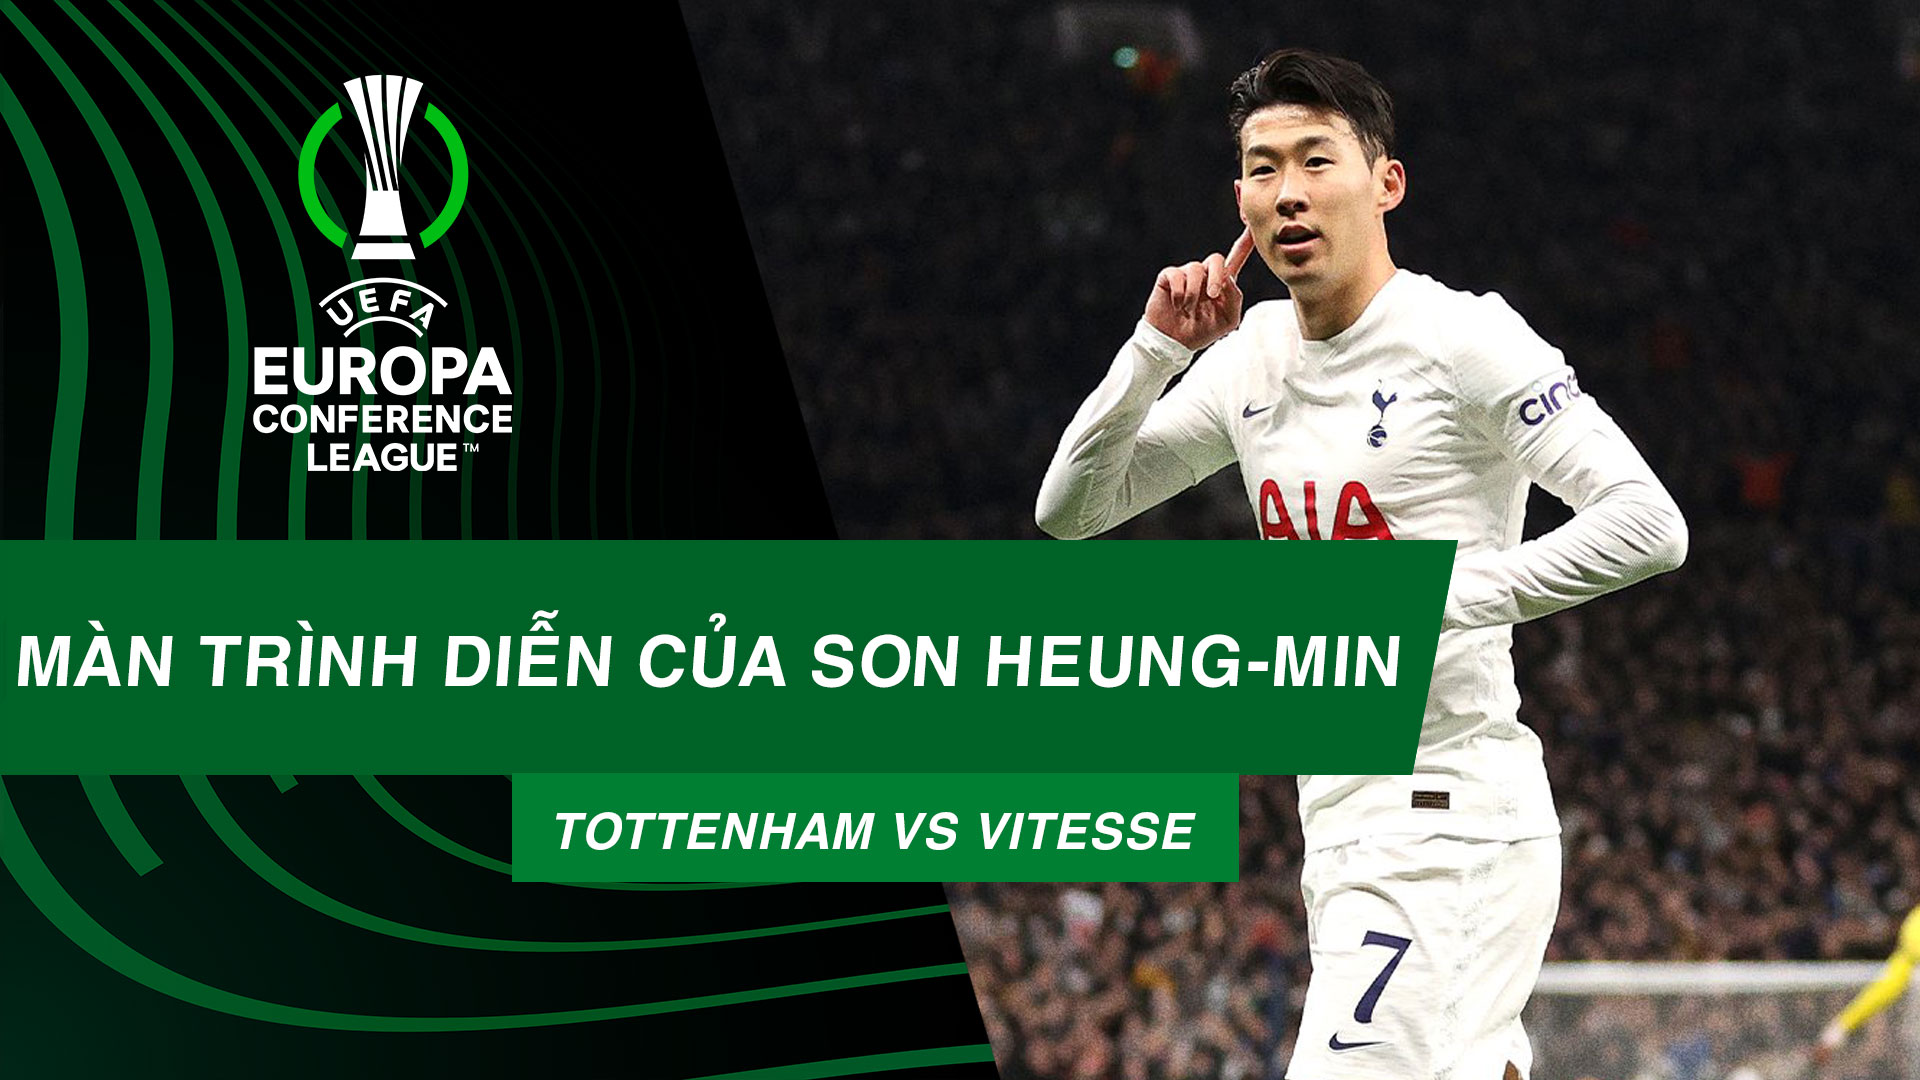 Màn trình diễn của Son Heung-min | Tottenham - Vitesse - UEFA Conference League